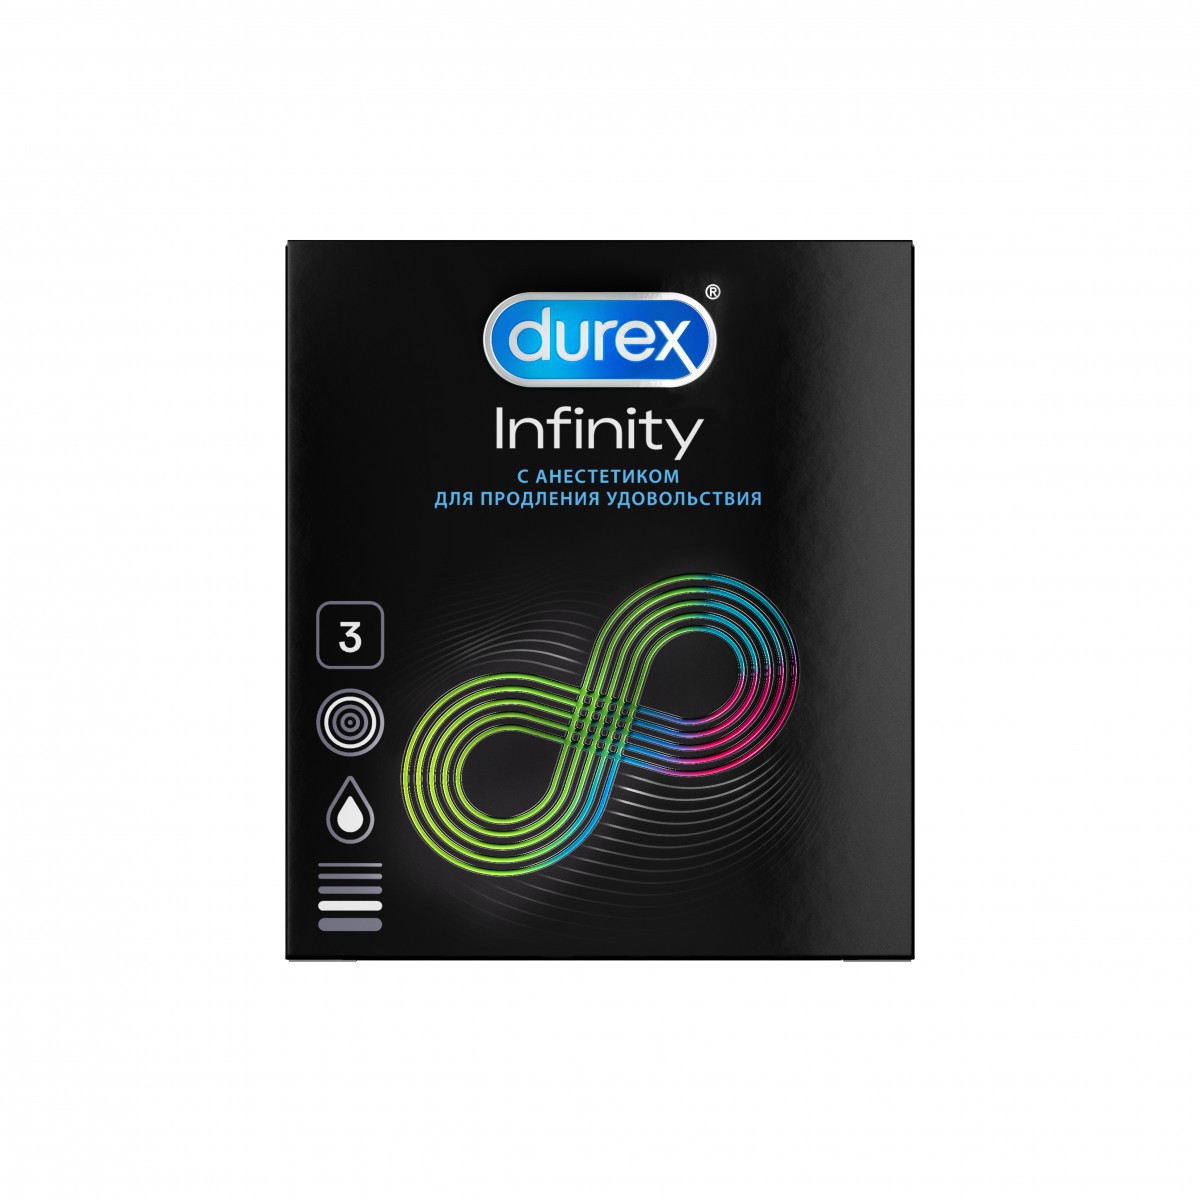 Презервативы DUREX Infinity с анестетиком гладкие (вариант 2) N3 уп